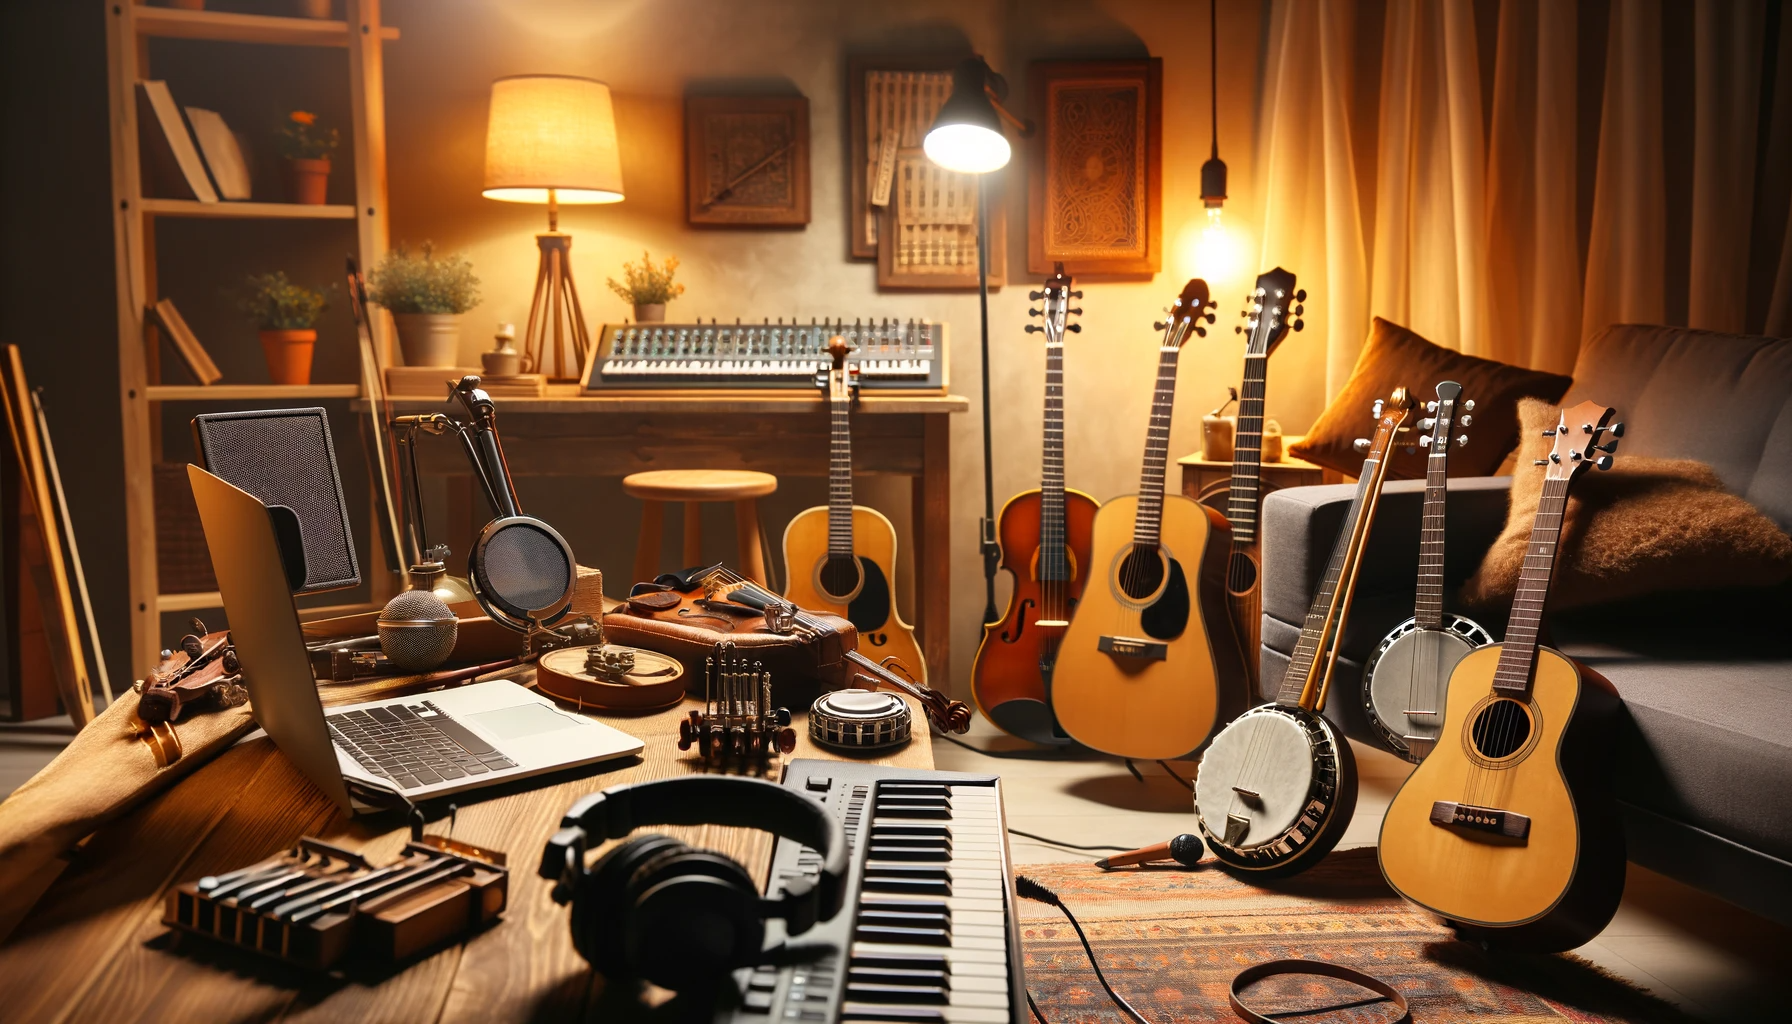 Domowe studio muzyczne z instrumentami Folk: gitara akustyczna, banjo, skrzypce, harmonijka oraz sprzęt nagraniowy.